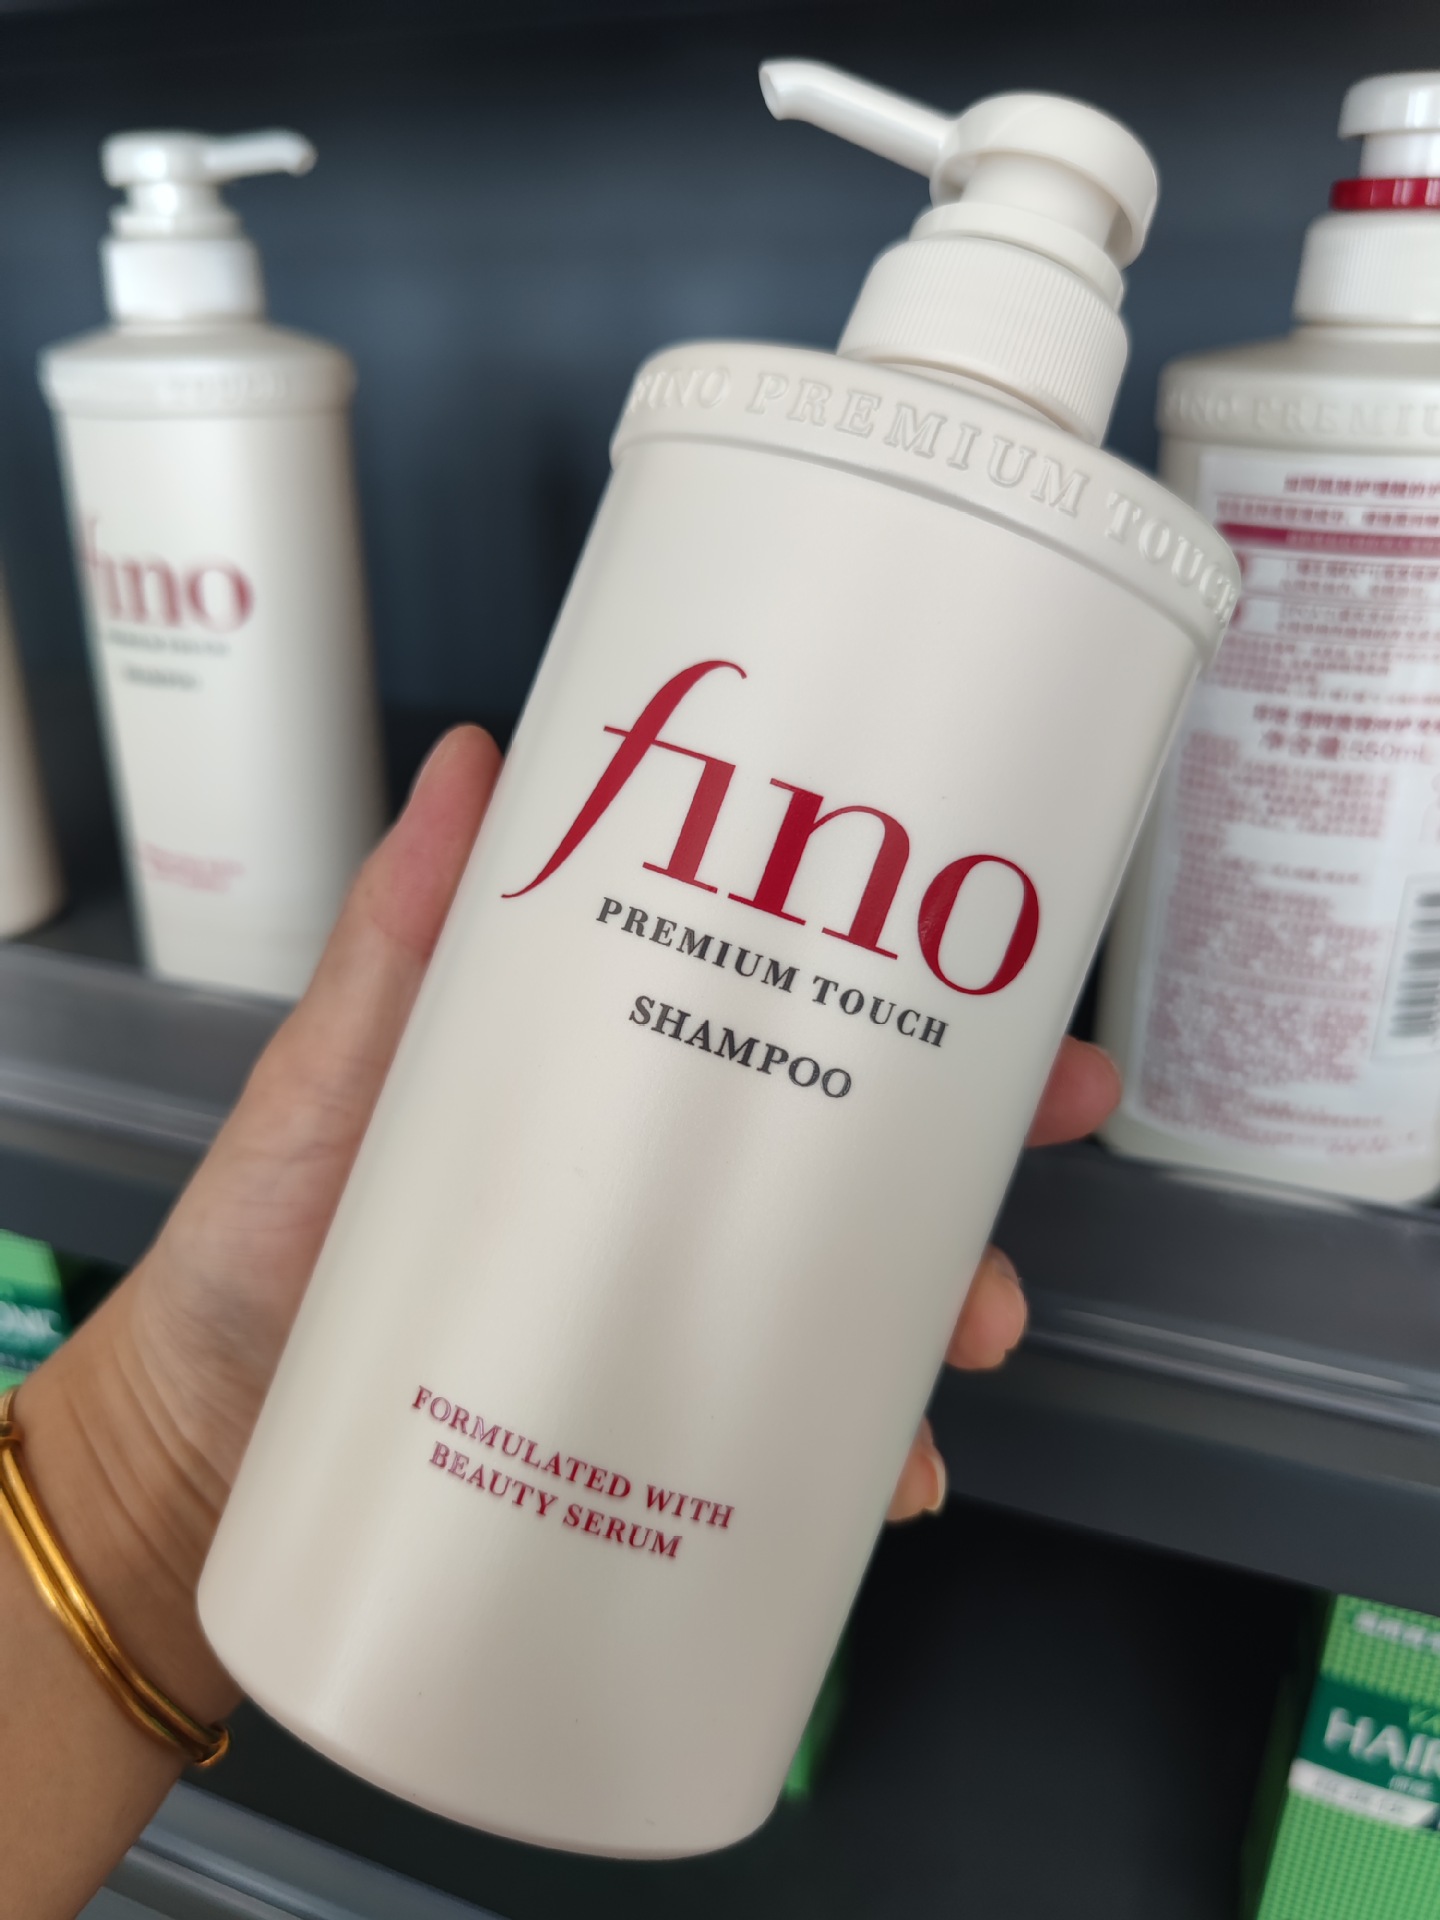 Dầu gội, dầu xả giúp tóc suôn mượt Fino Shampoo - Conditioner Nhật Bản 550ml